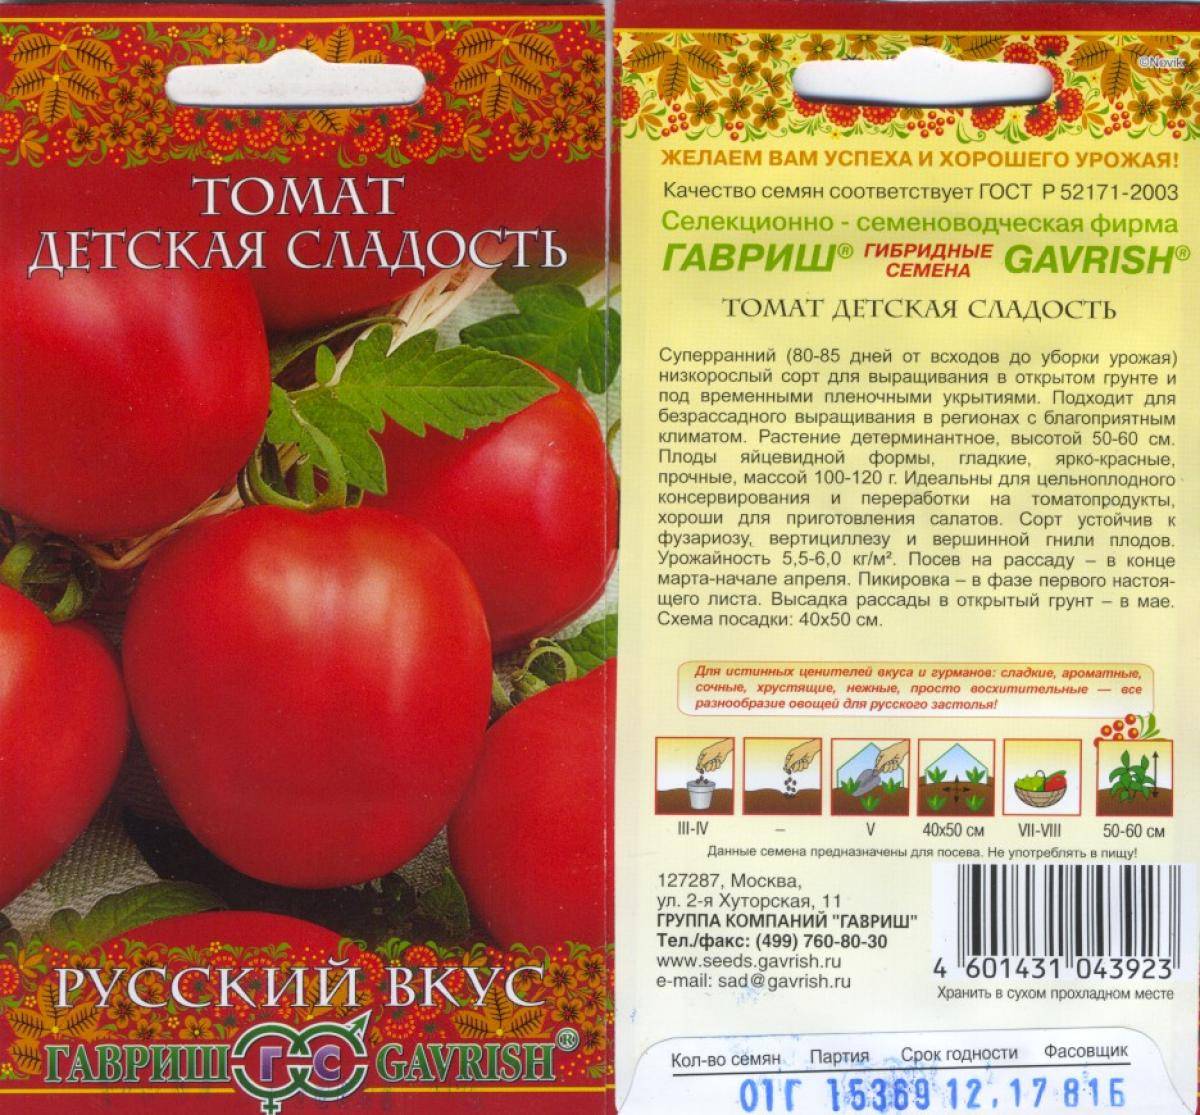 Томат ирина: характеристика и описание сорта помидоров, его урожайность, фото плодов и отзывы огородников